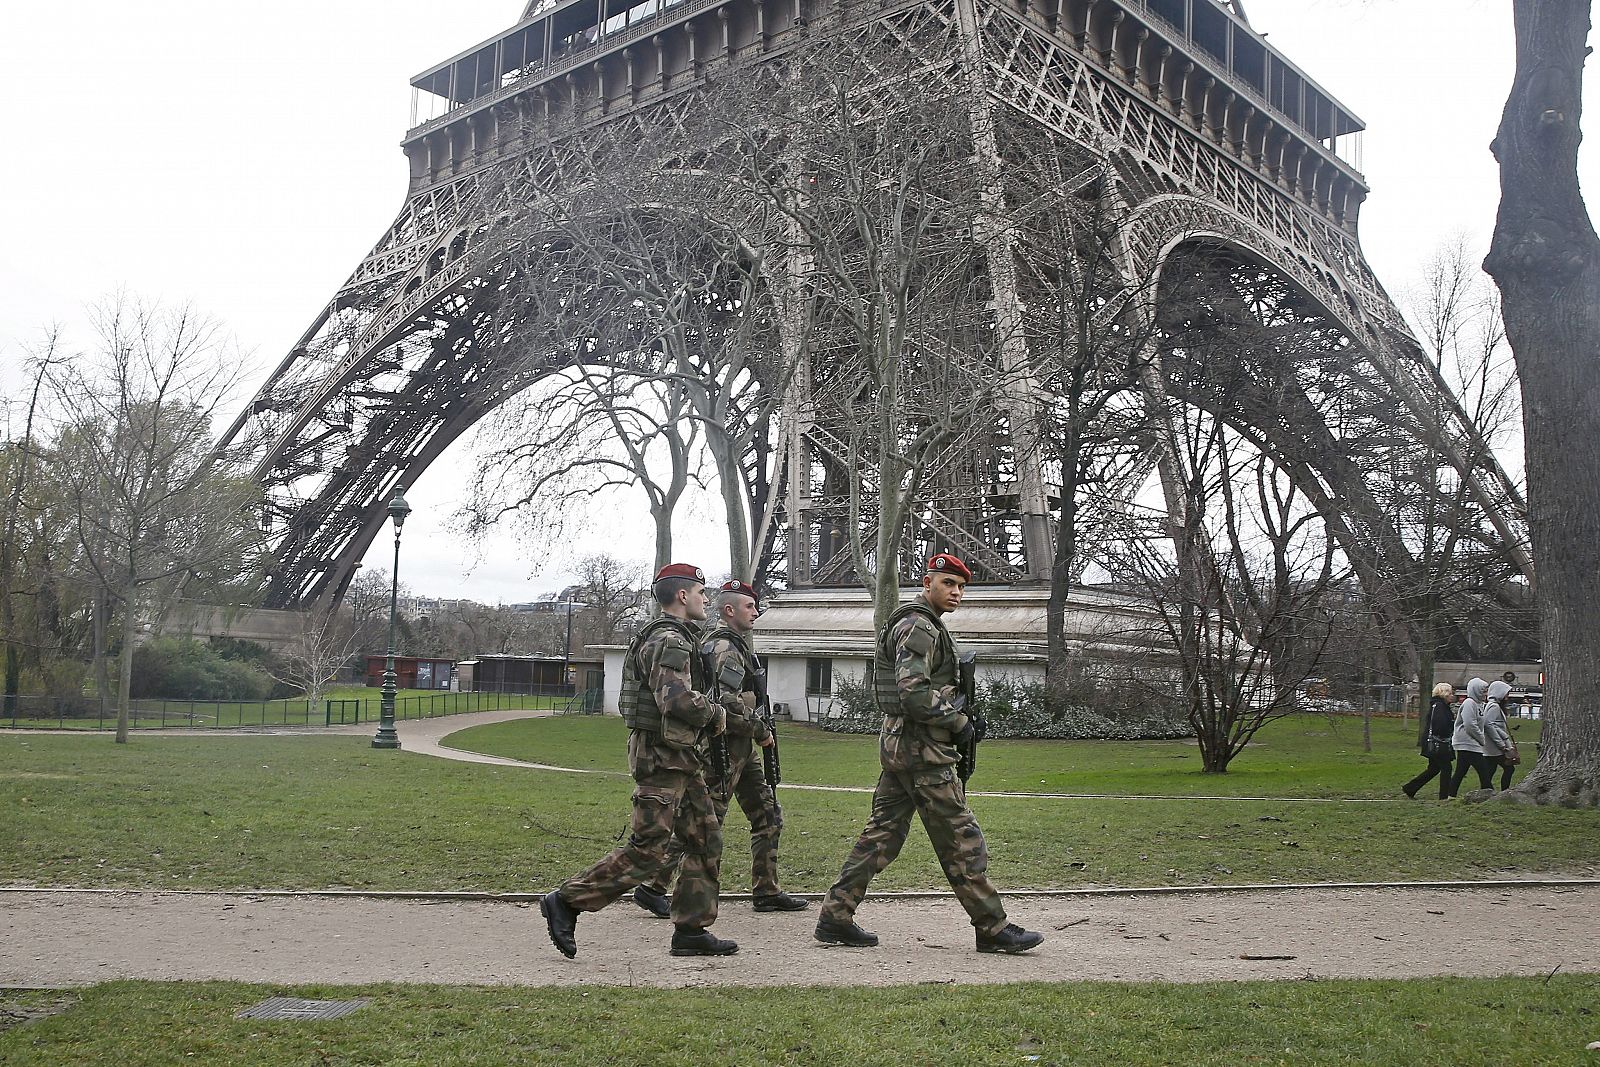 Varios soldados pasean cerca de la Torre Eiffel, en París (Francia).